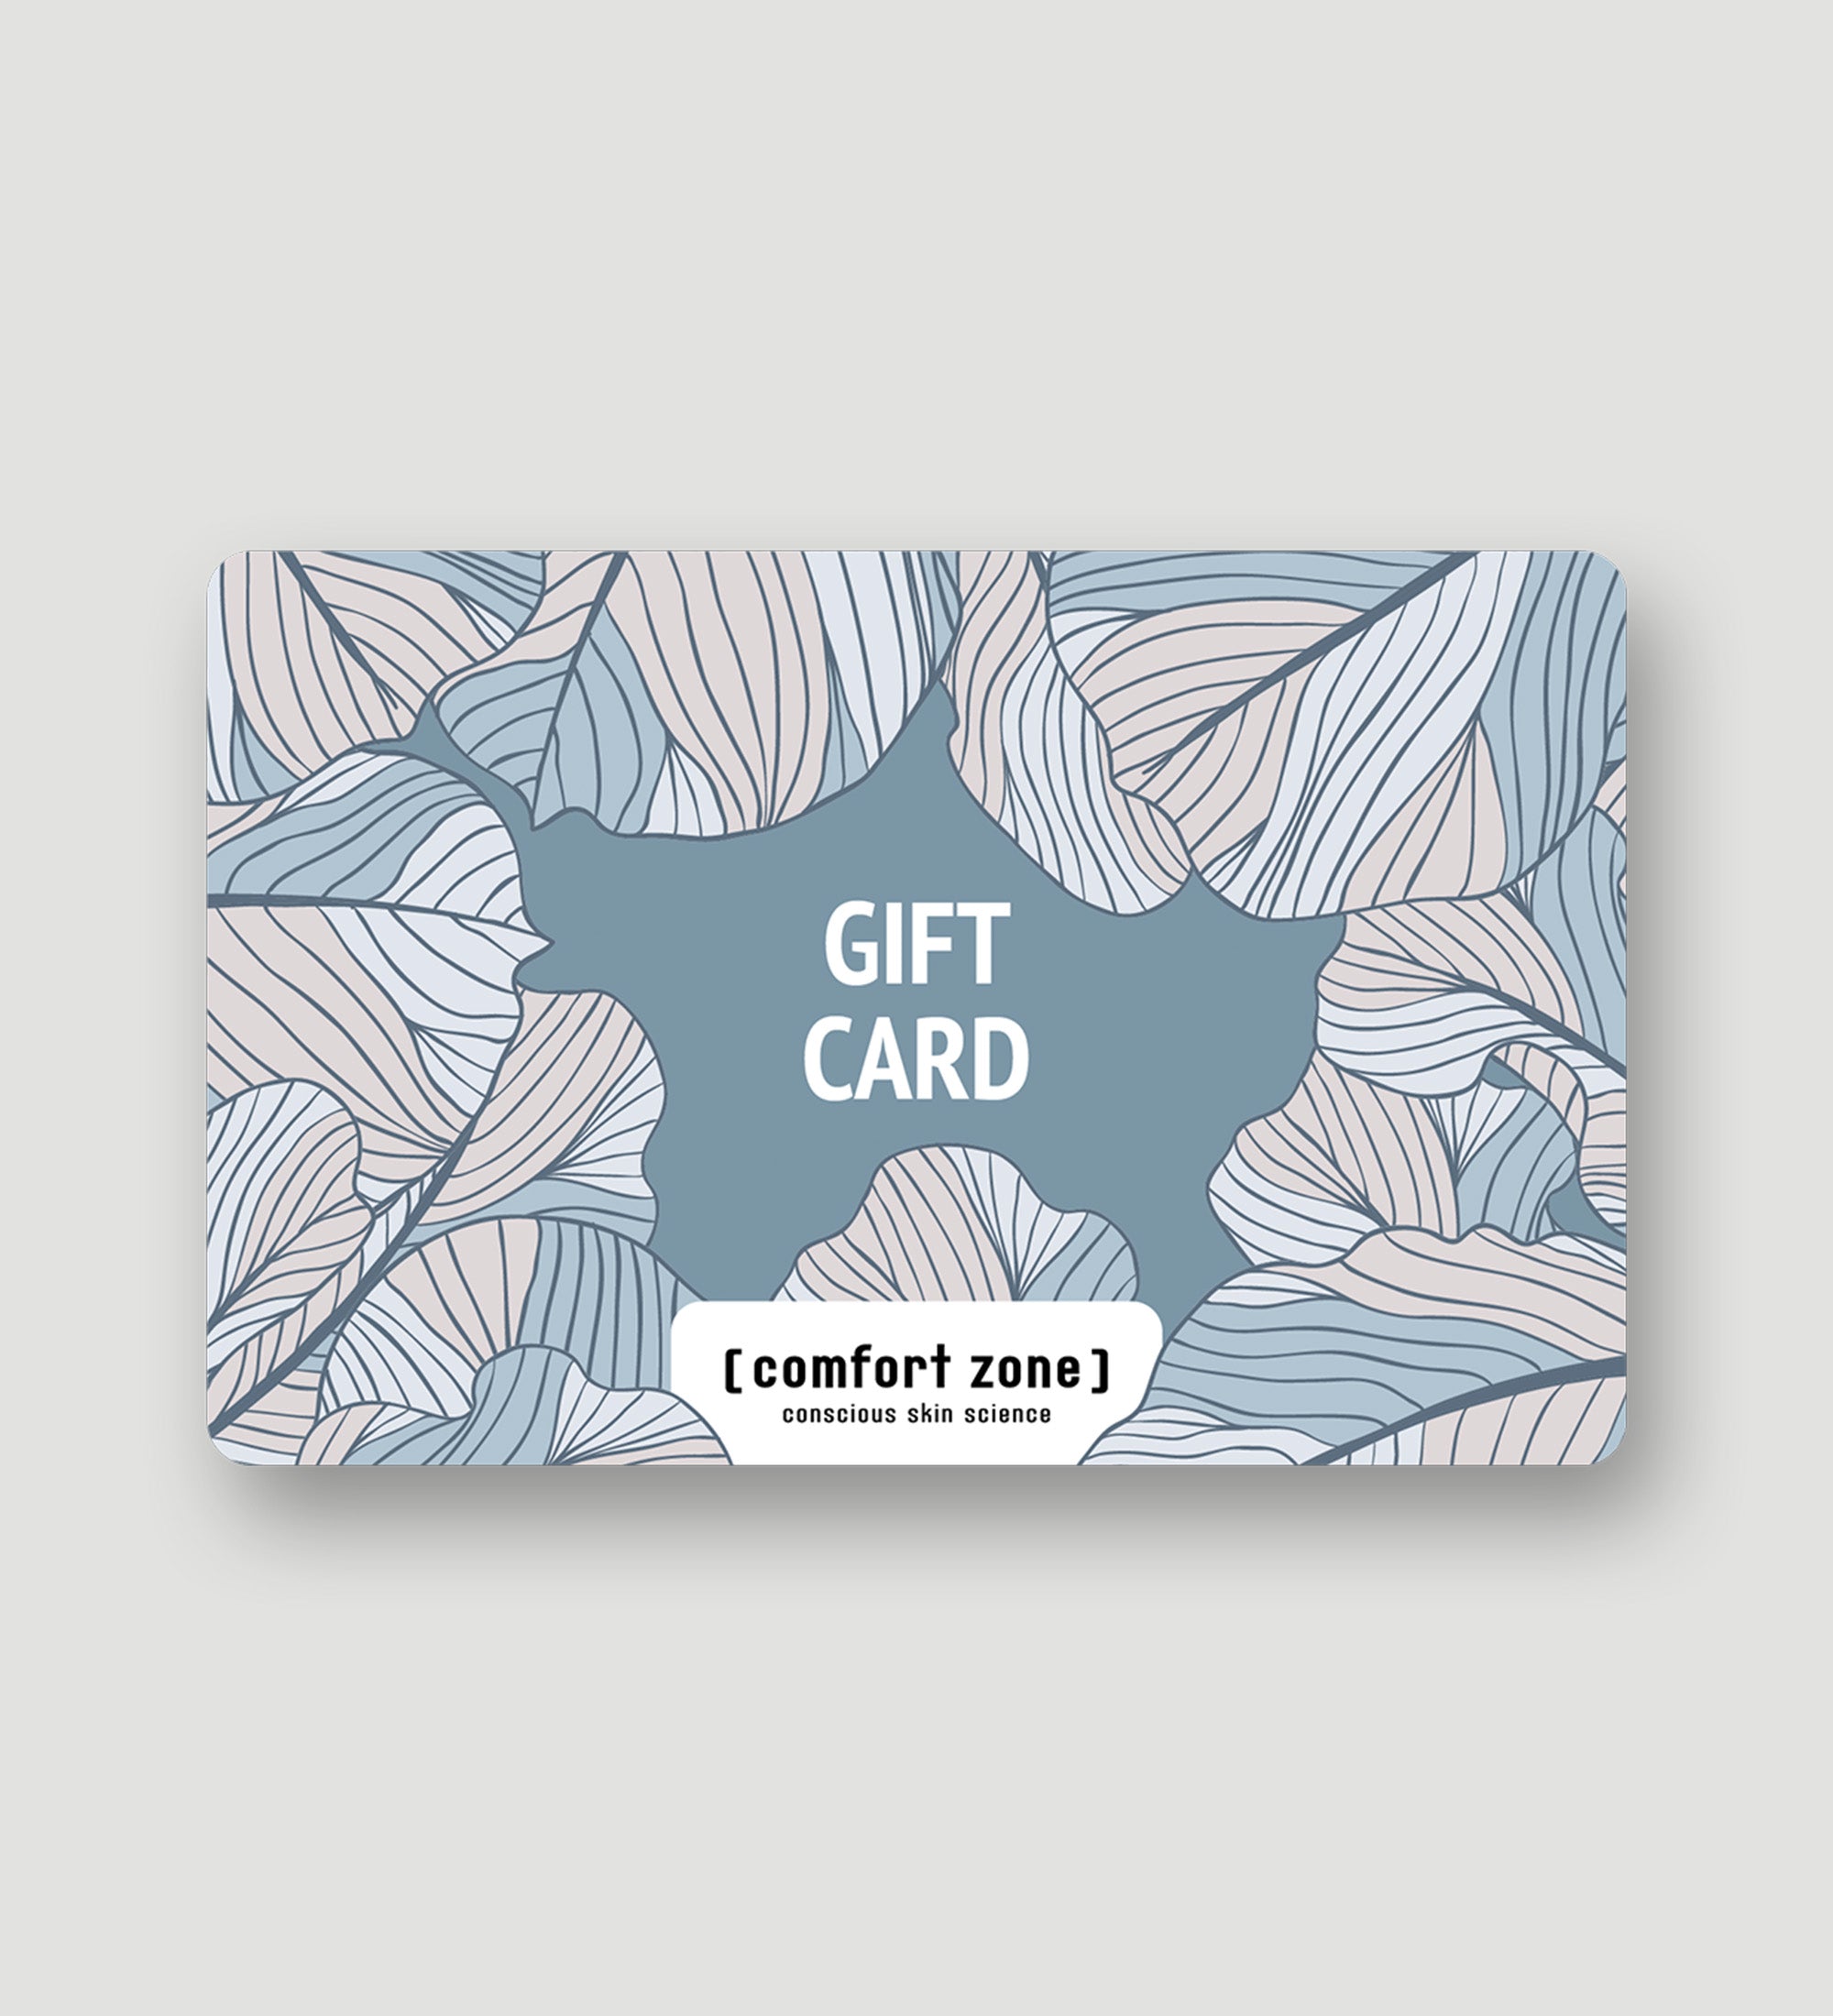 Comfort Zone: gift_card E-GIFT CARD Il regalo perfetto per ogni occasione. Con la Gift Card in formato digitale sei sicuro di fare il dono più gradito! Seleziona la card che vuoi regalare, e chi la riceve può scegliere i prodotti che preferisce.-
